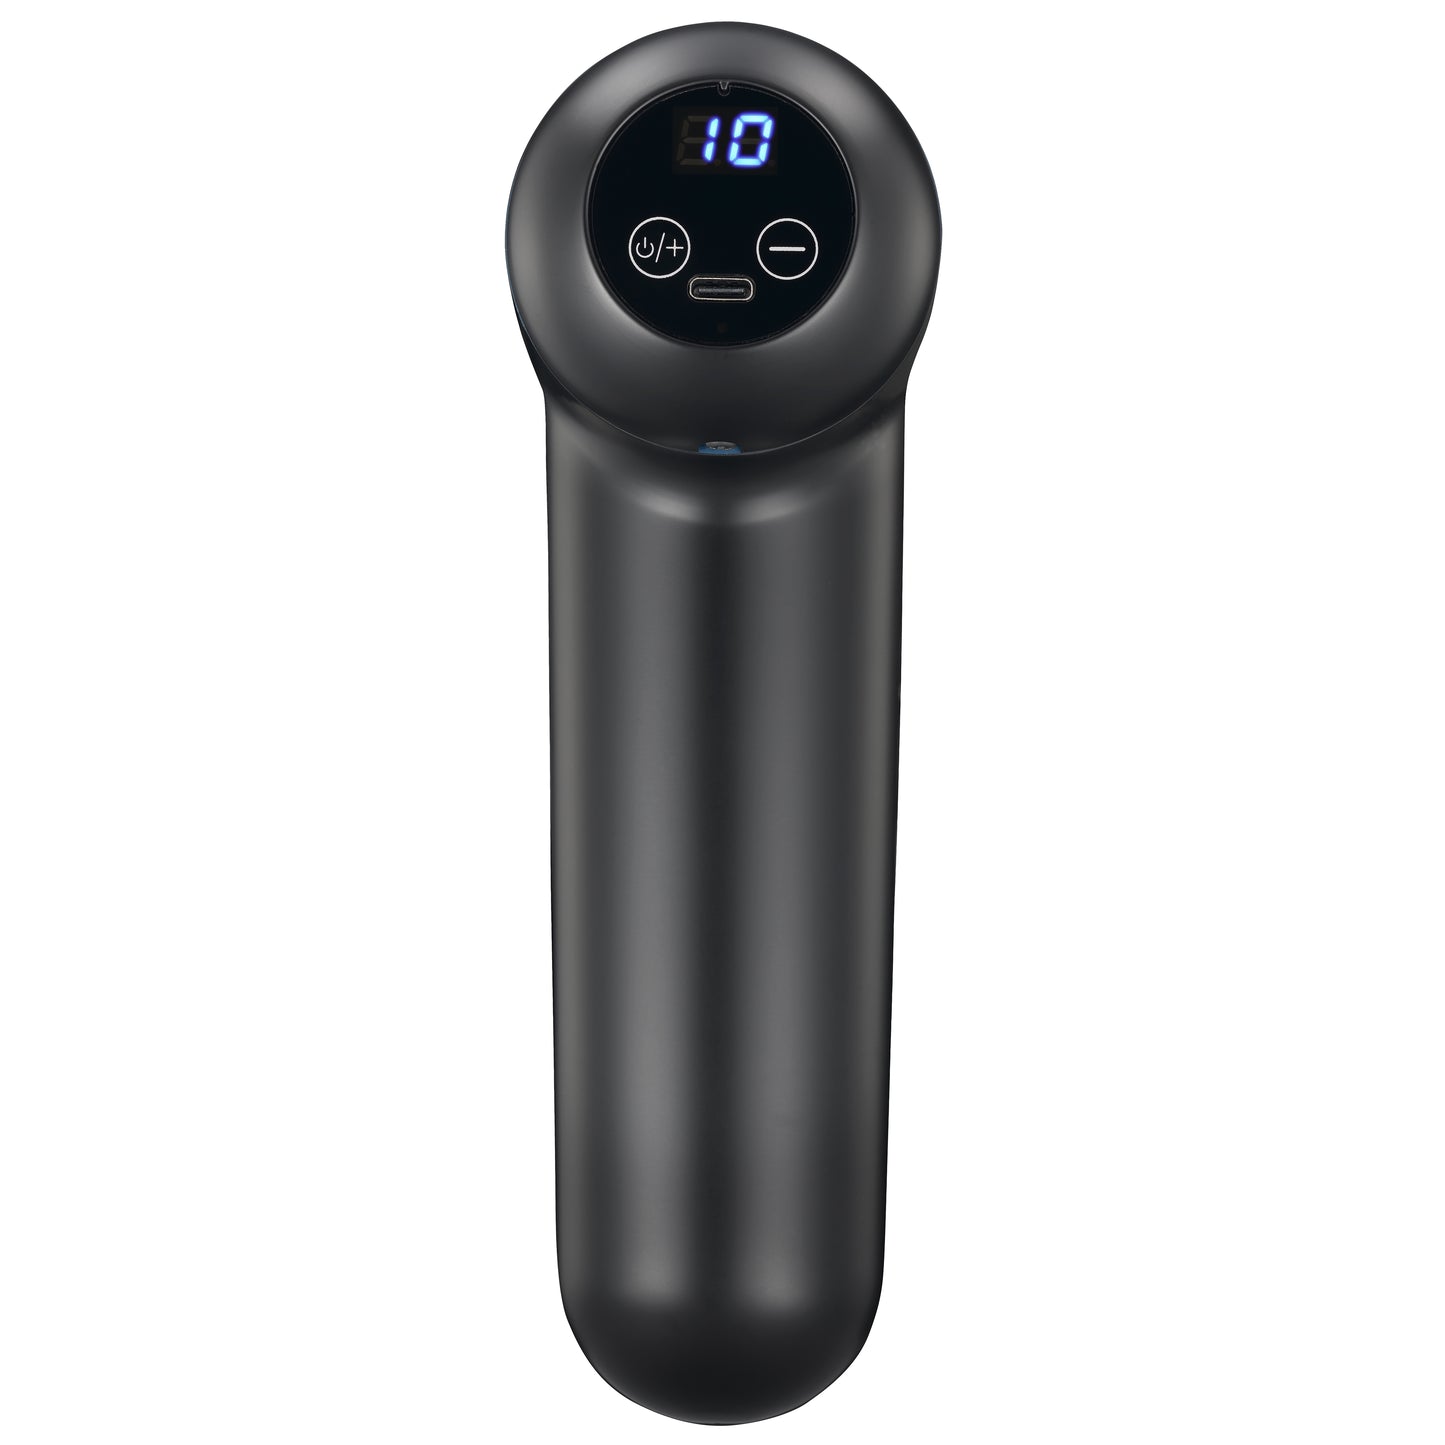 Melissa 16770048 - Oplaadbaar massagepistool met LED-display, zwart